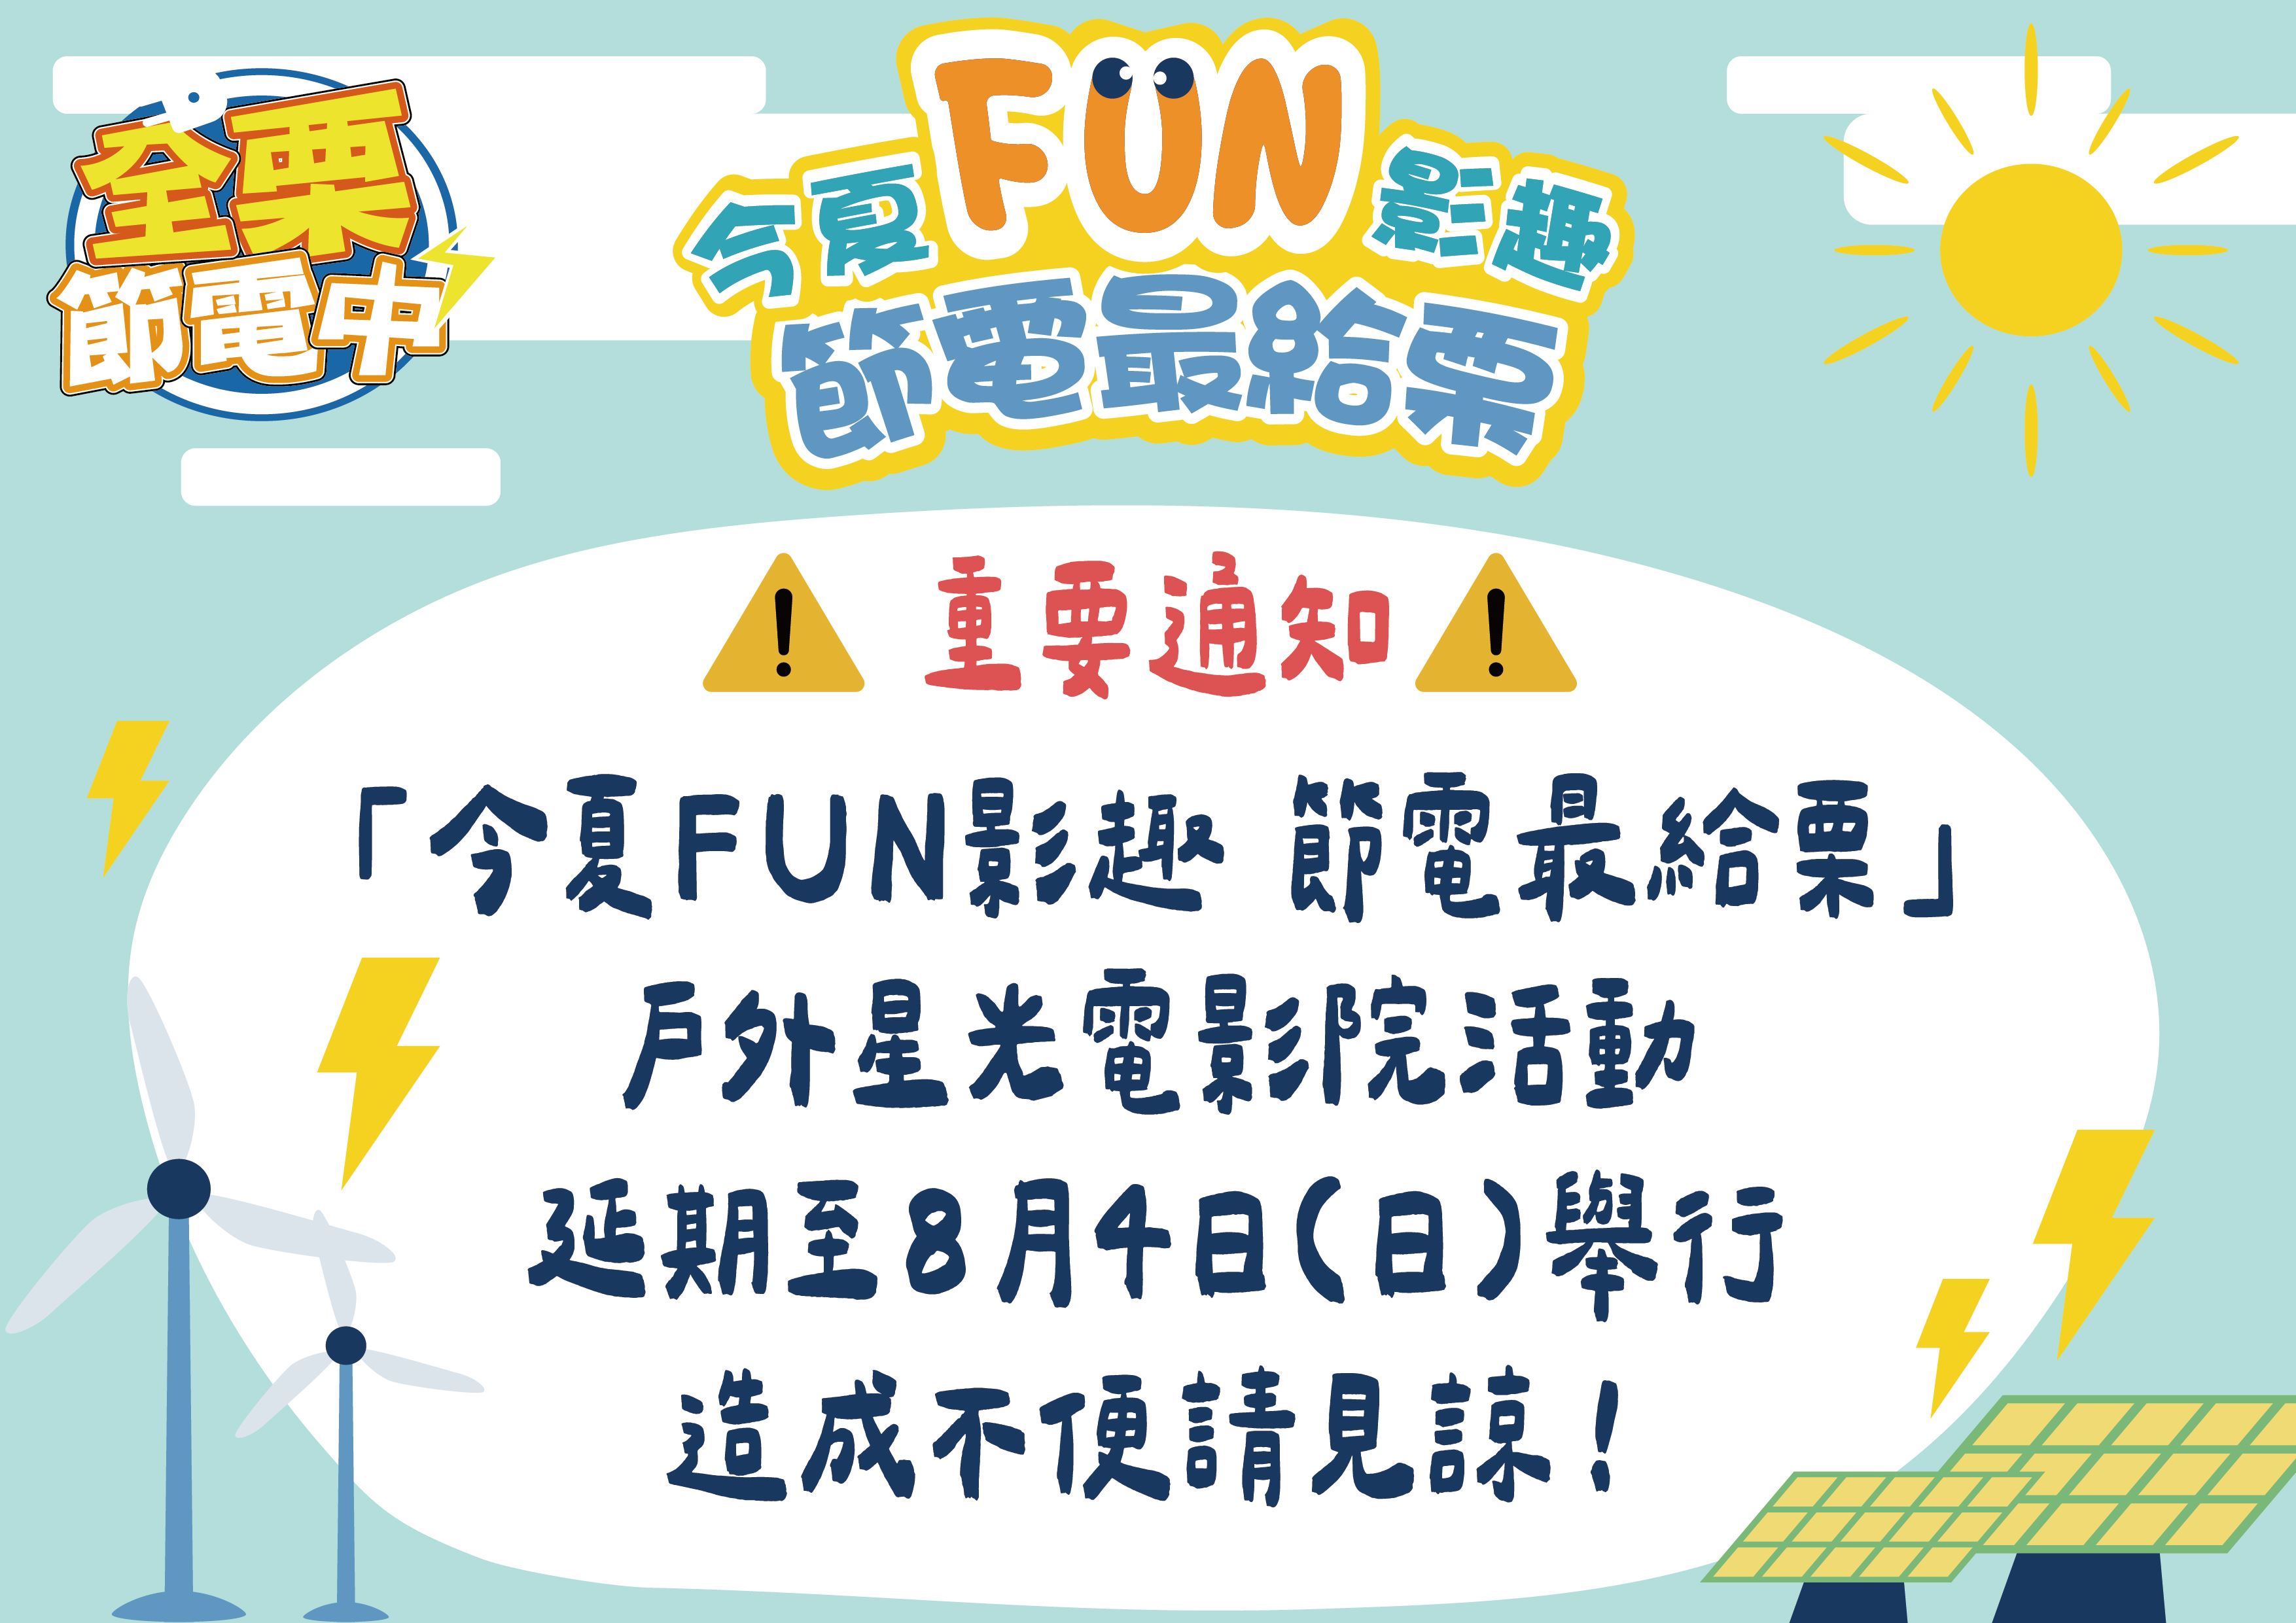 「今夏FUN影趣  節電最給栗」戶外電影院活動 因凱米颱風影響  延至8月4日舉行！